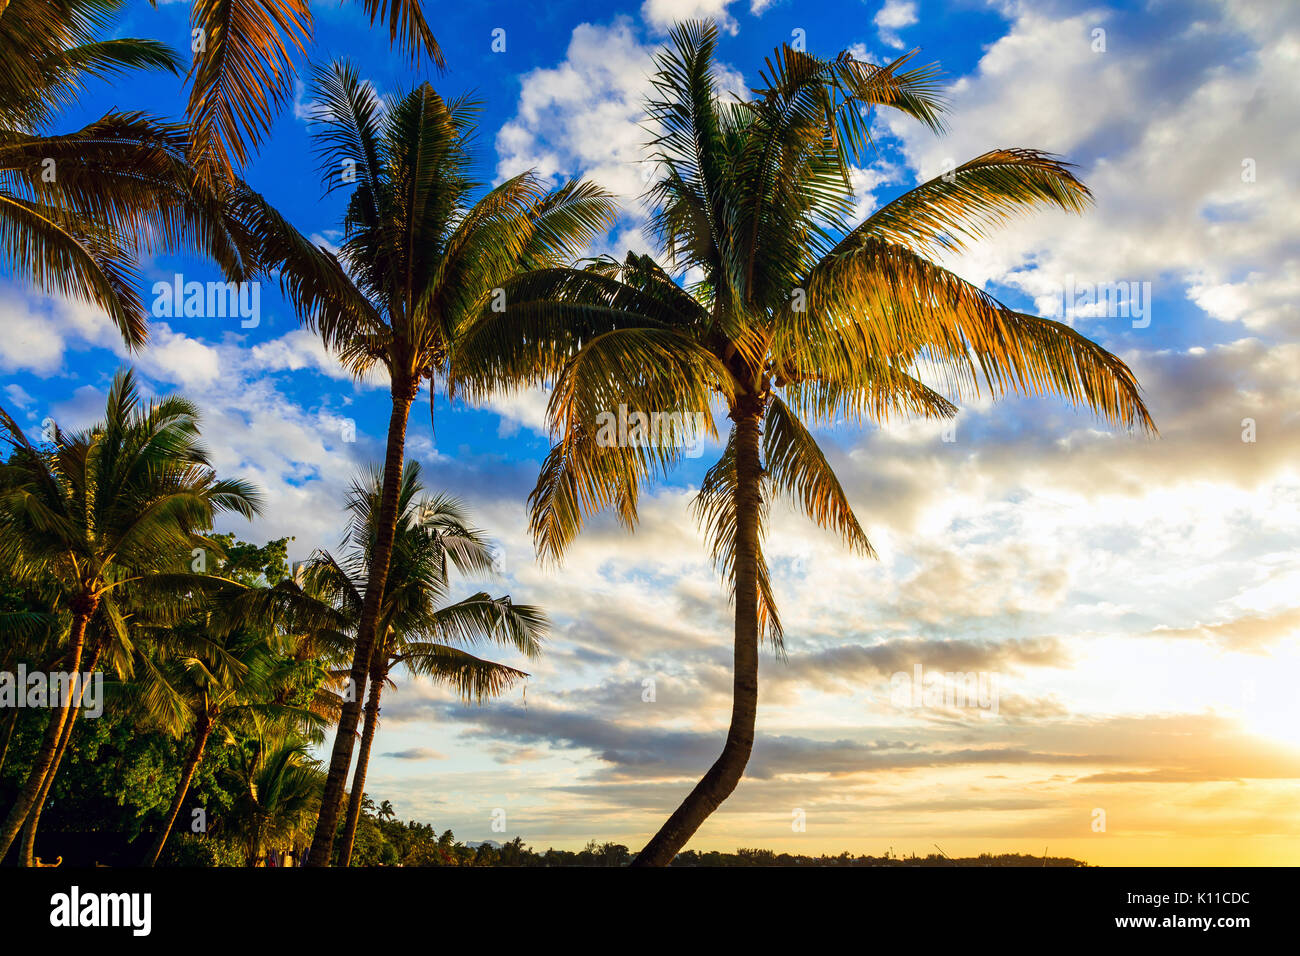 Vacances tropicales avec vue sur palmier coucher du soleil.L'île Maurice. Banque D'Images